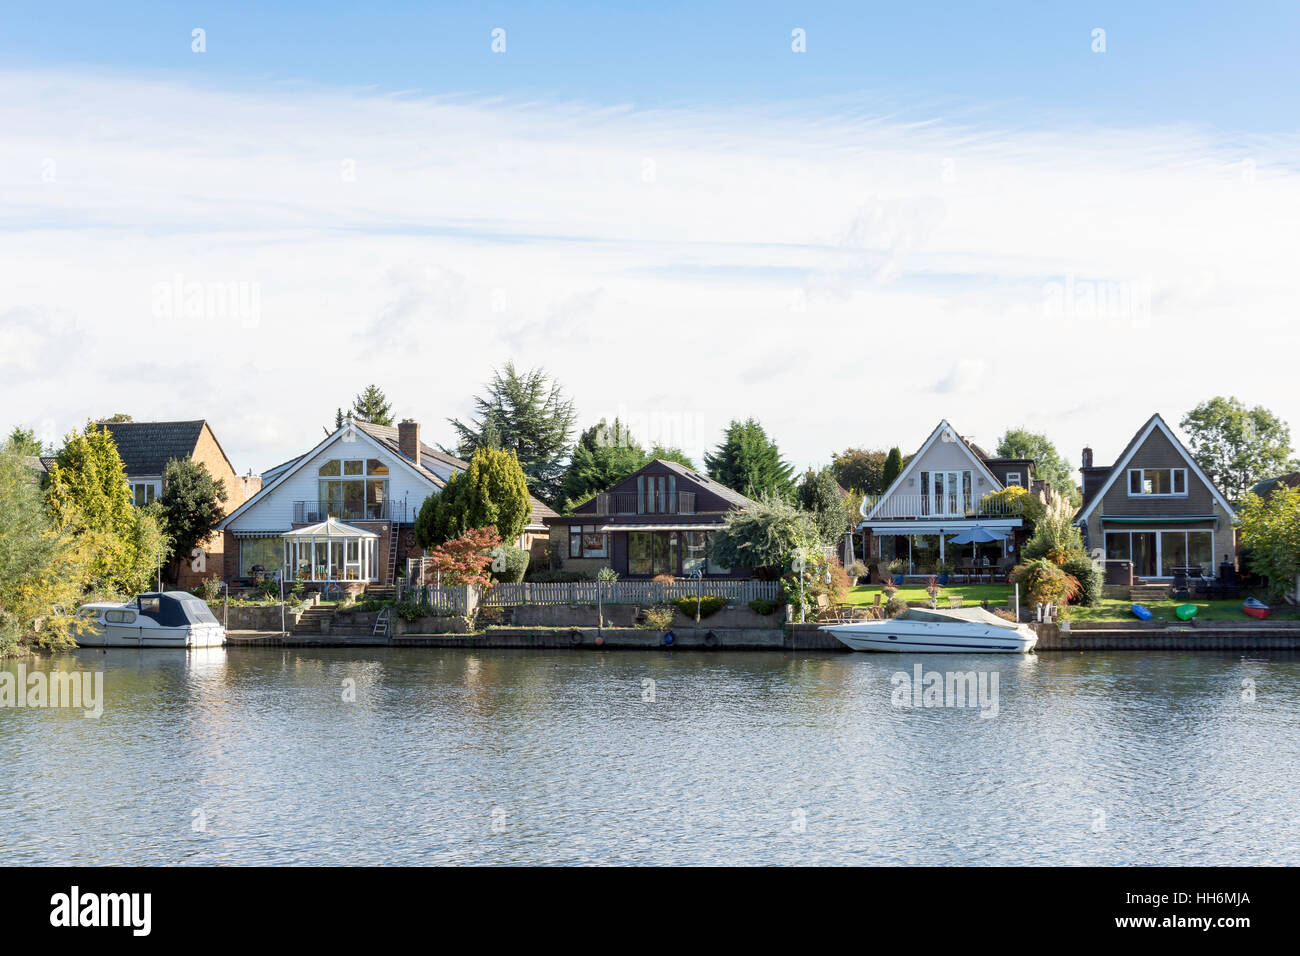 L'ensemble de maisons au bord de la Tamise, Windsor, Berkshire, Angleterre, Royaume-Uni Banque D'Images